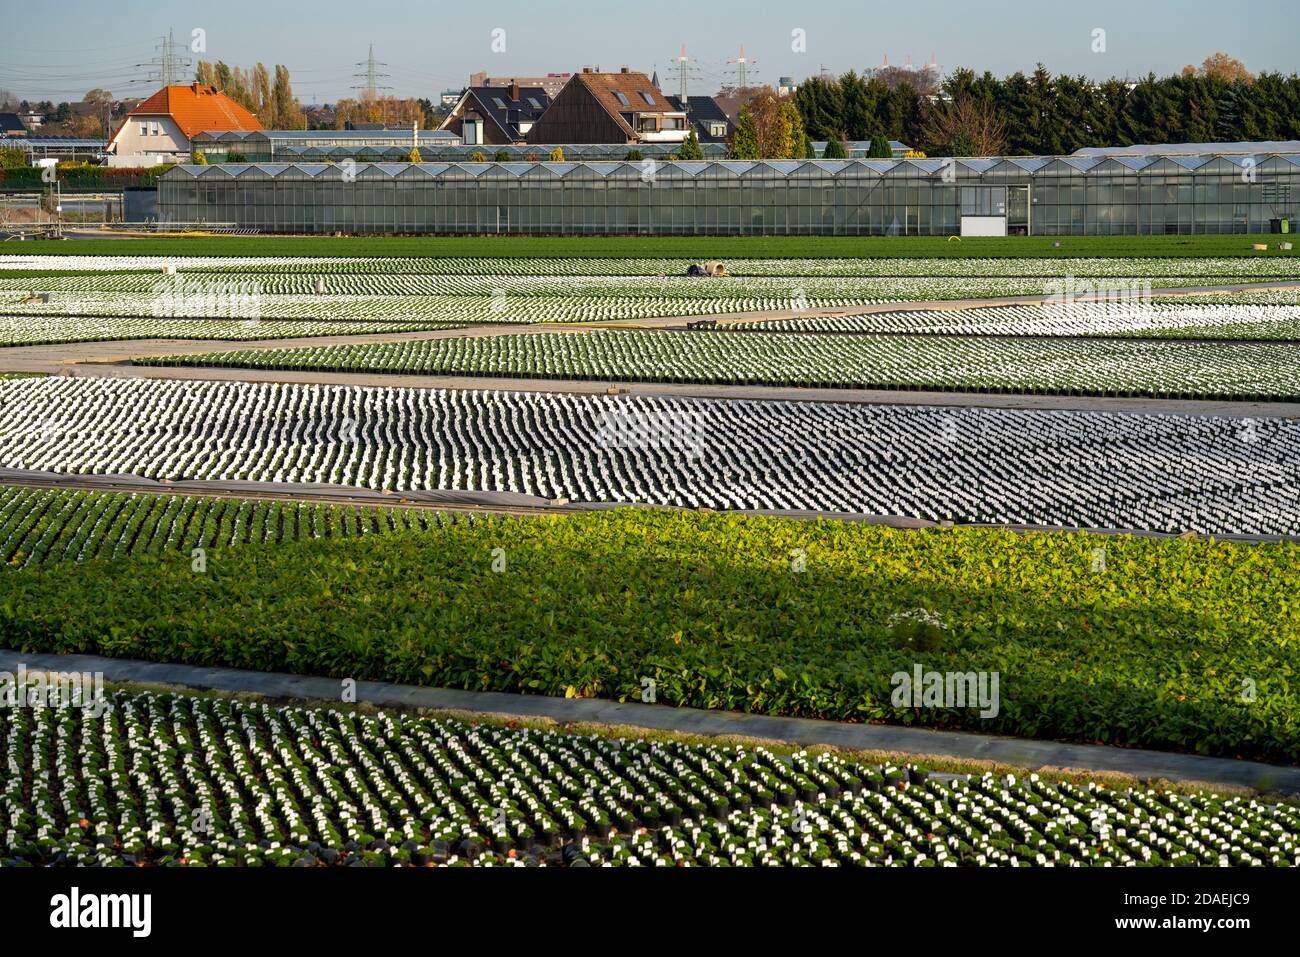 Markt Gartenarbeit, Pflanzenzüchtung, Zierpflanzen wachsen in Blumentöpfen, Outdoor, Düsseldorf-Volmerswerth, Deutschland Stockfoto